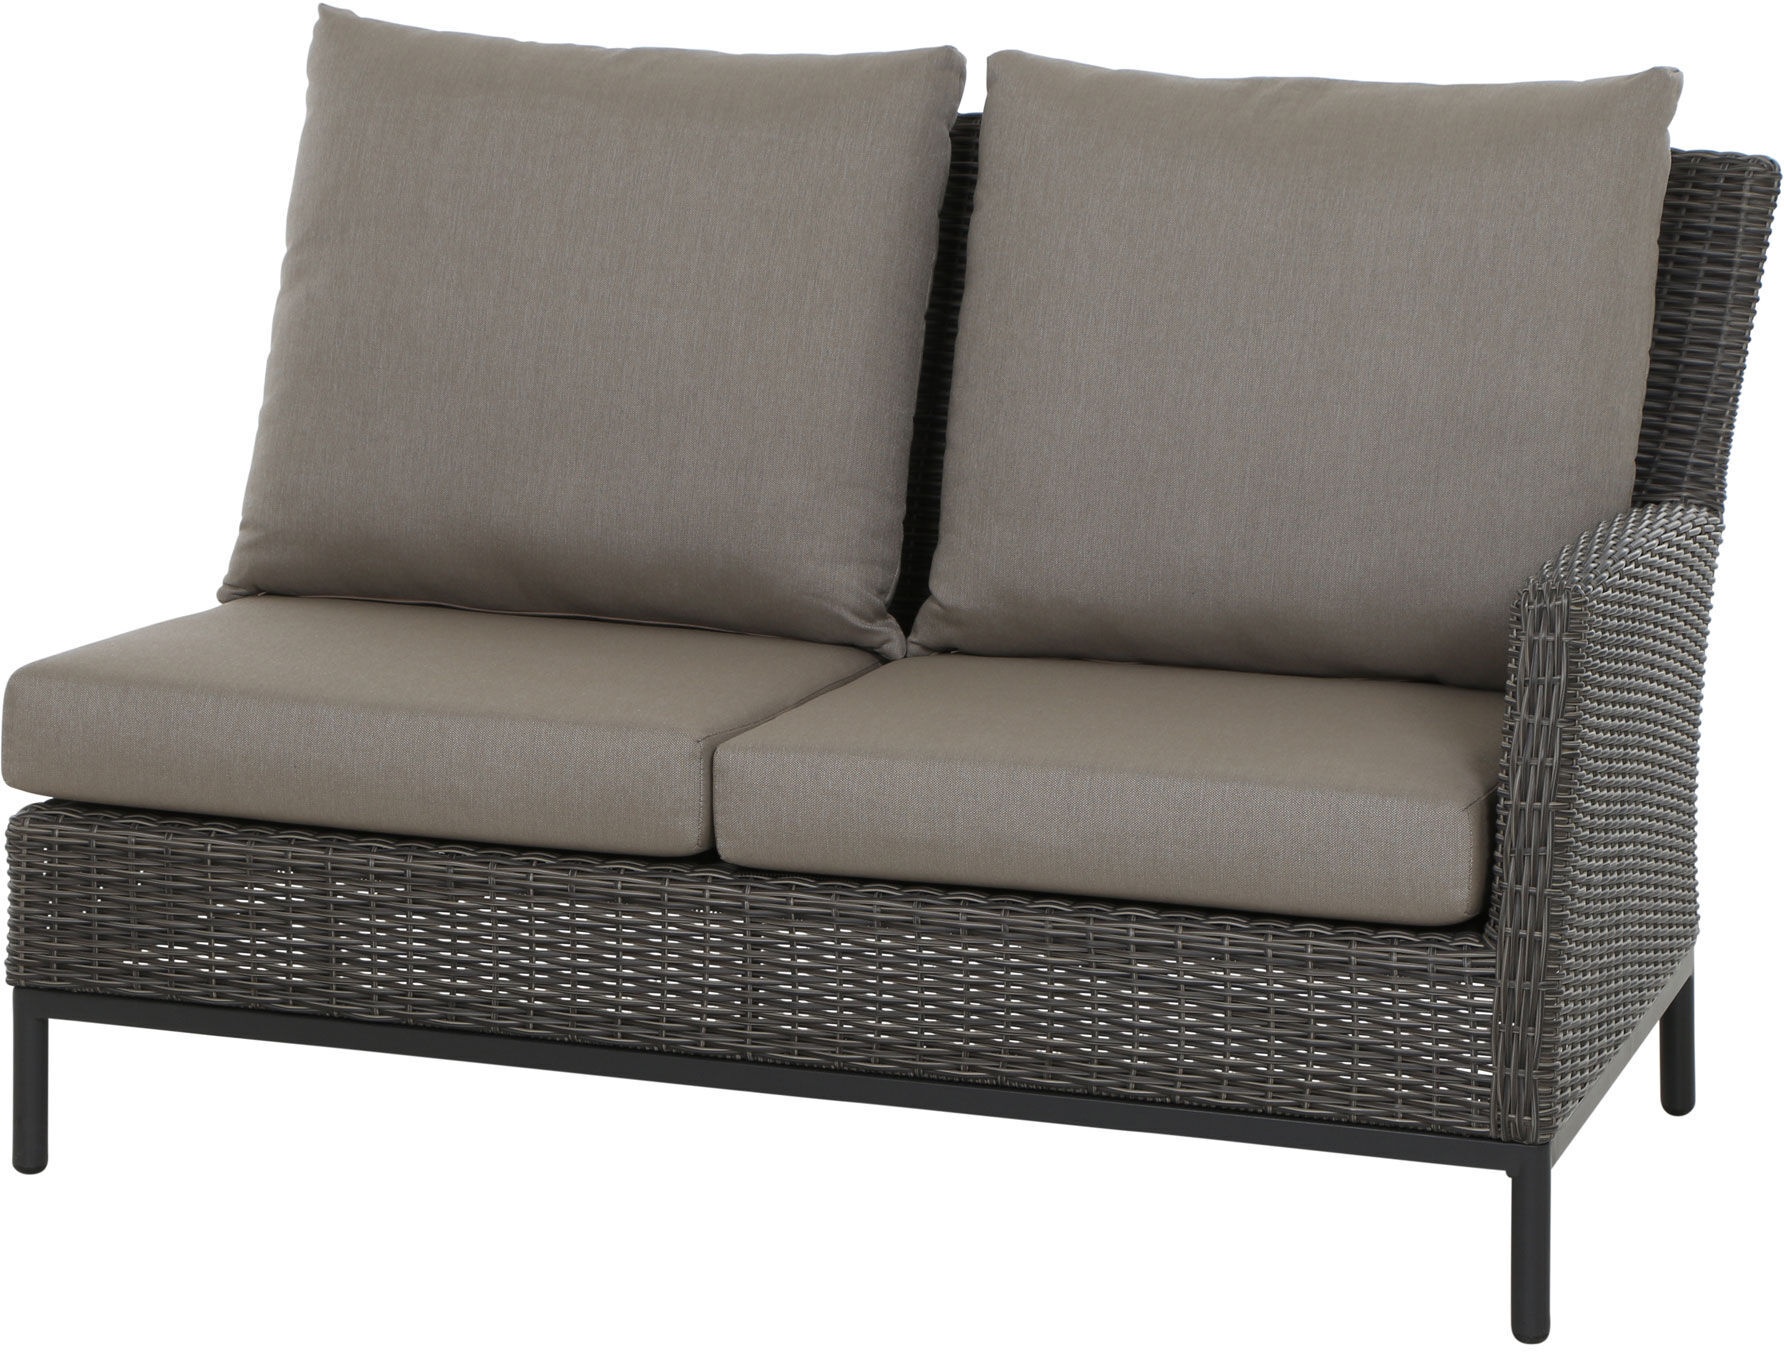 SIENA GARDEN Amira 2-Sitzer Sofa, Armlehne links, charcoal grey, Alu/ Gardino®-Geflecht, 84x137x88cm, inkl. Polster